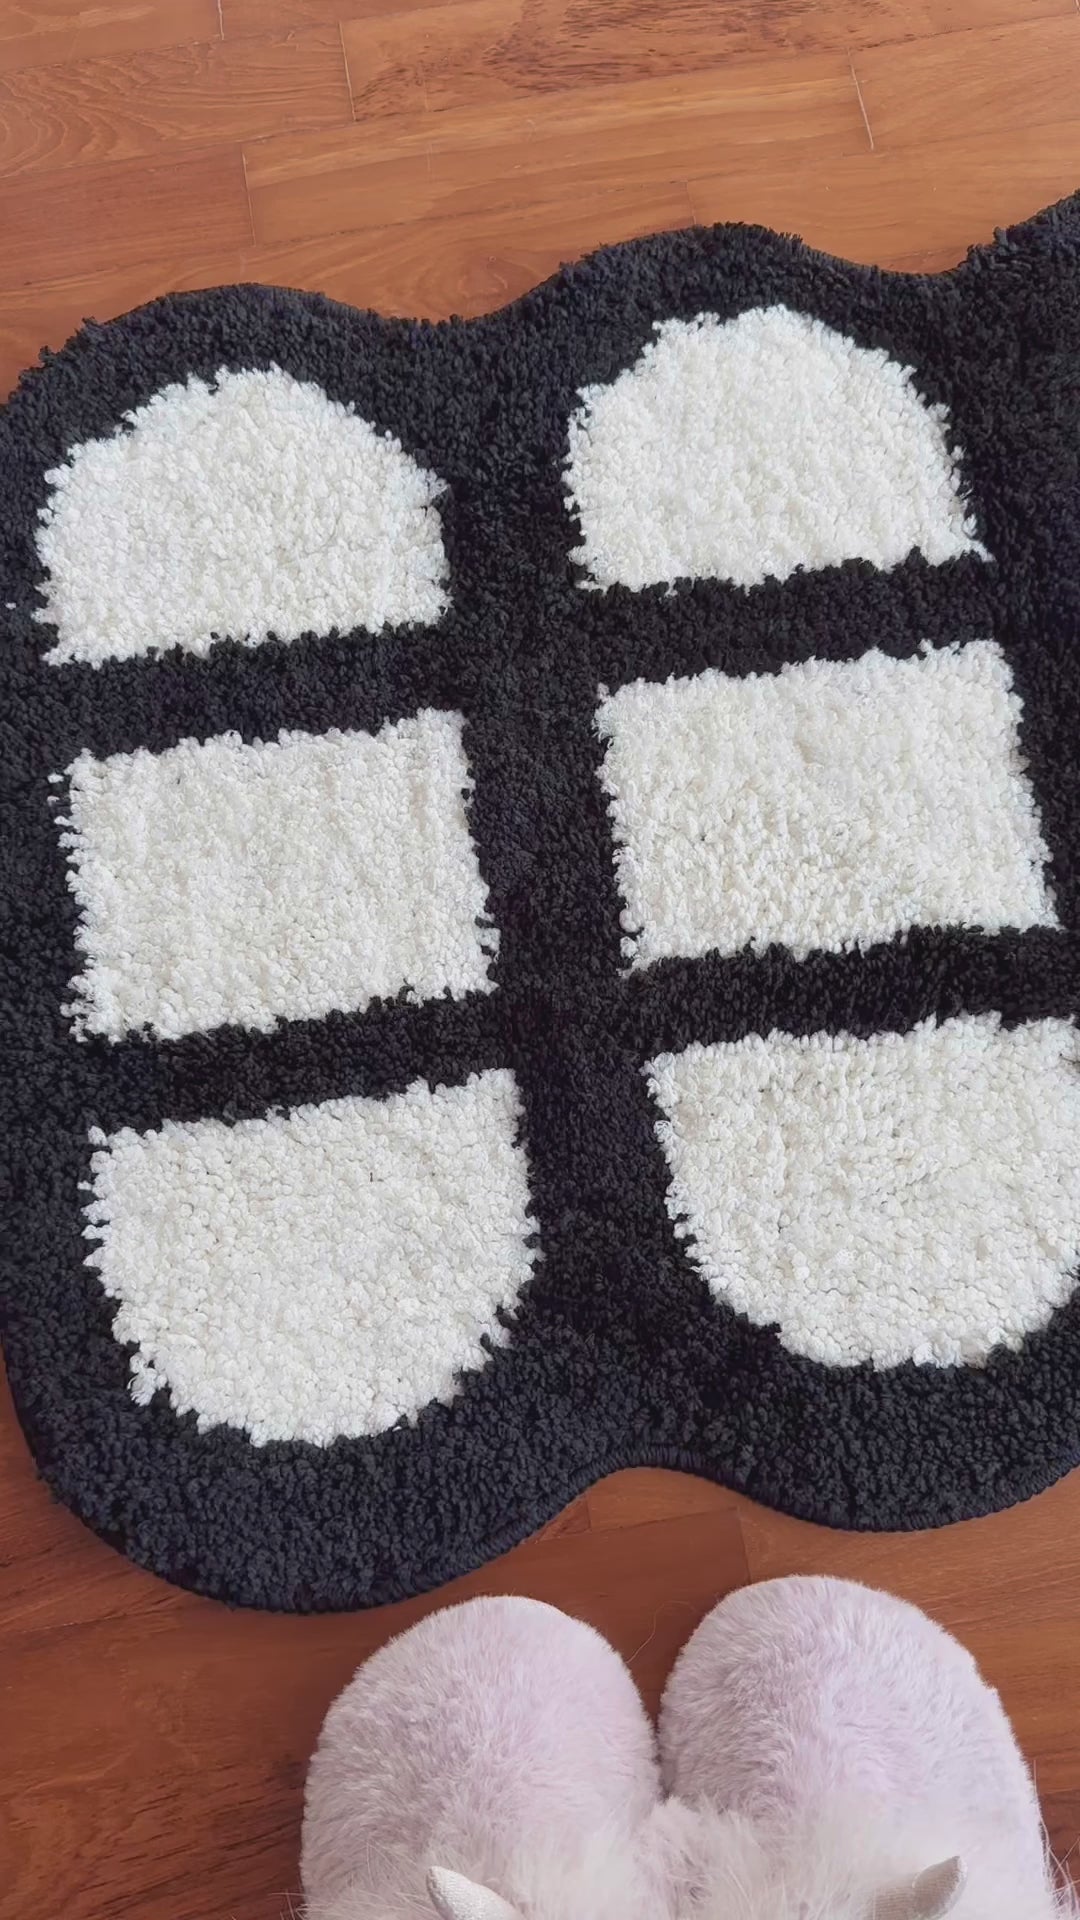 Domino Comfort Floor Mat